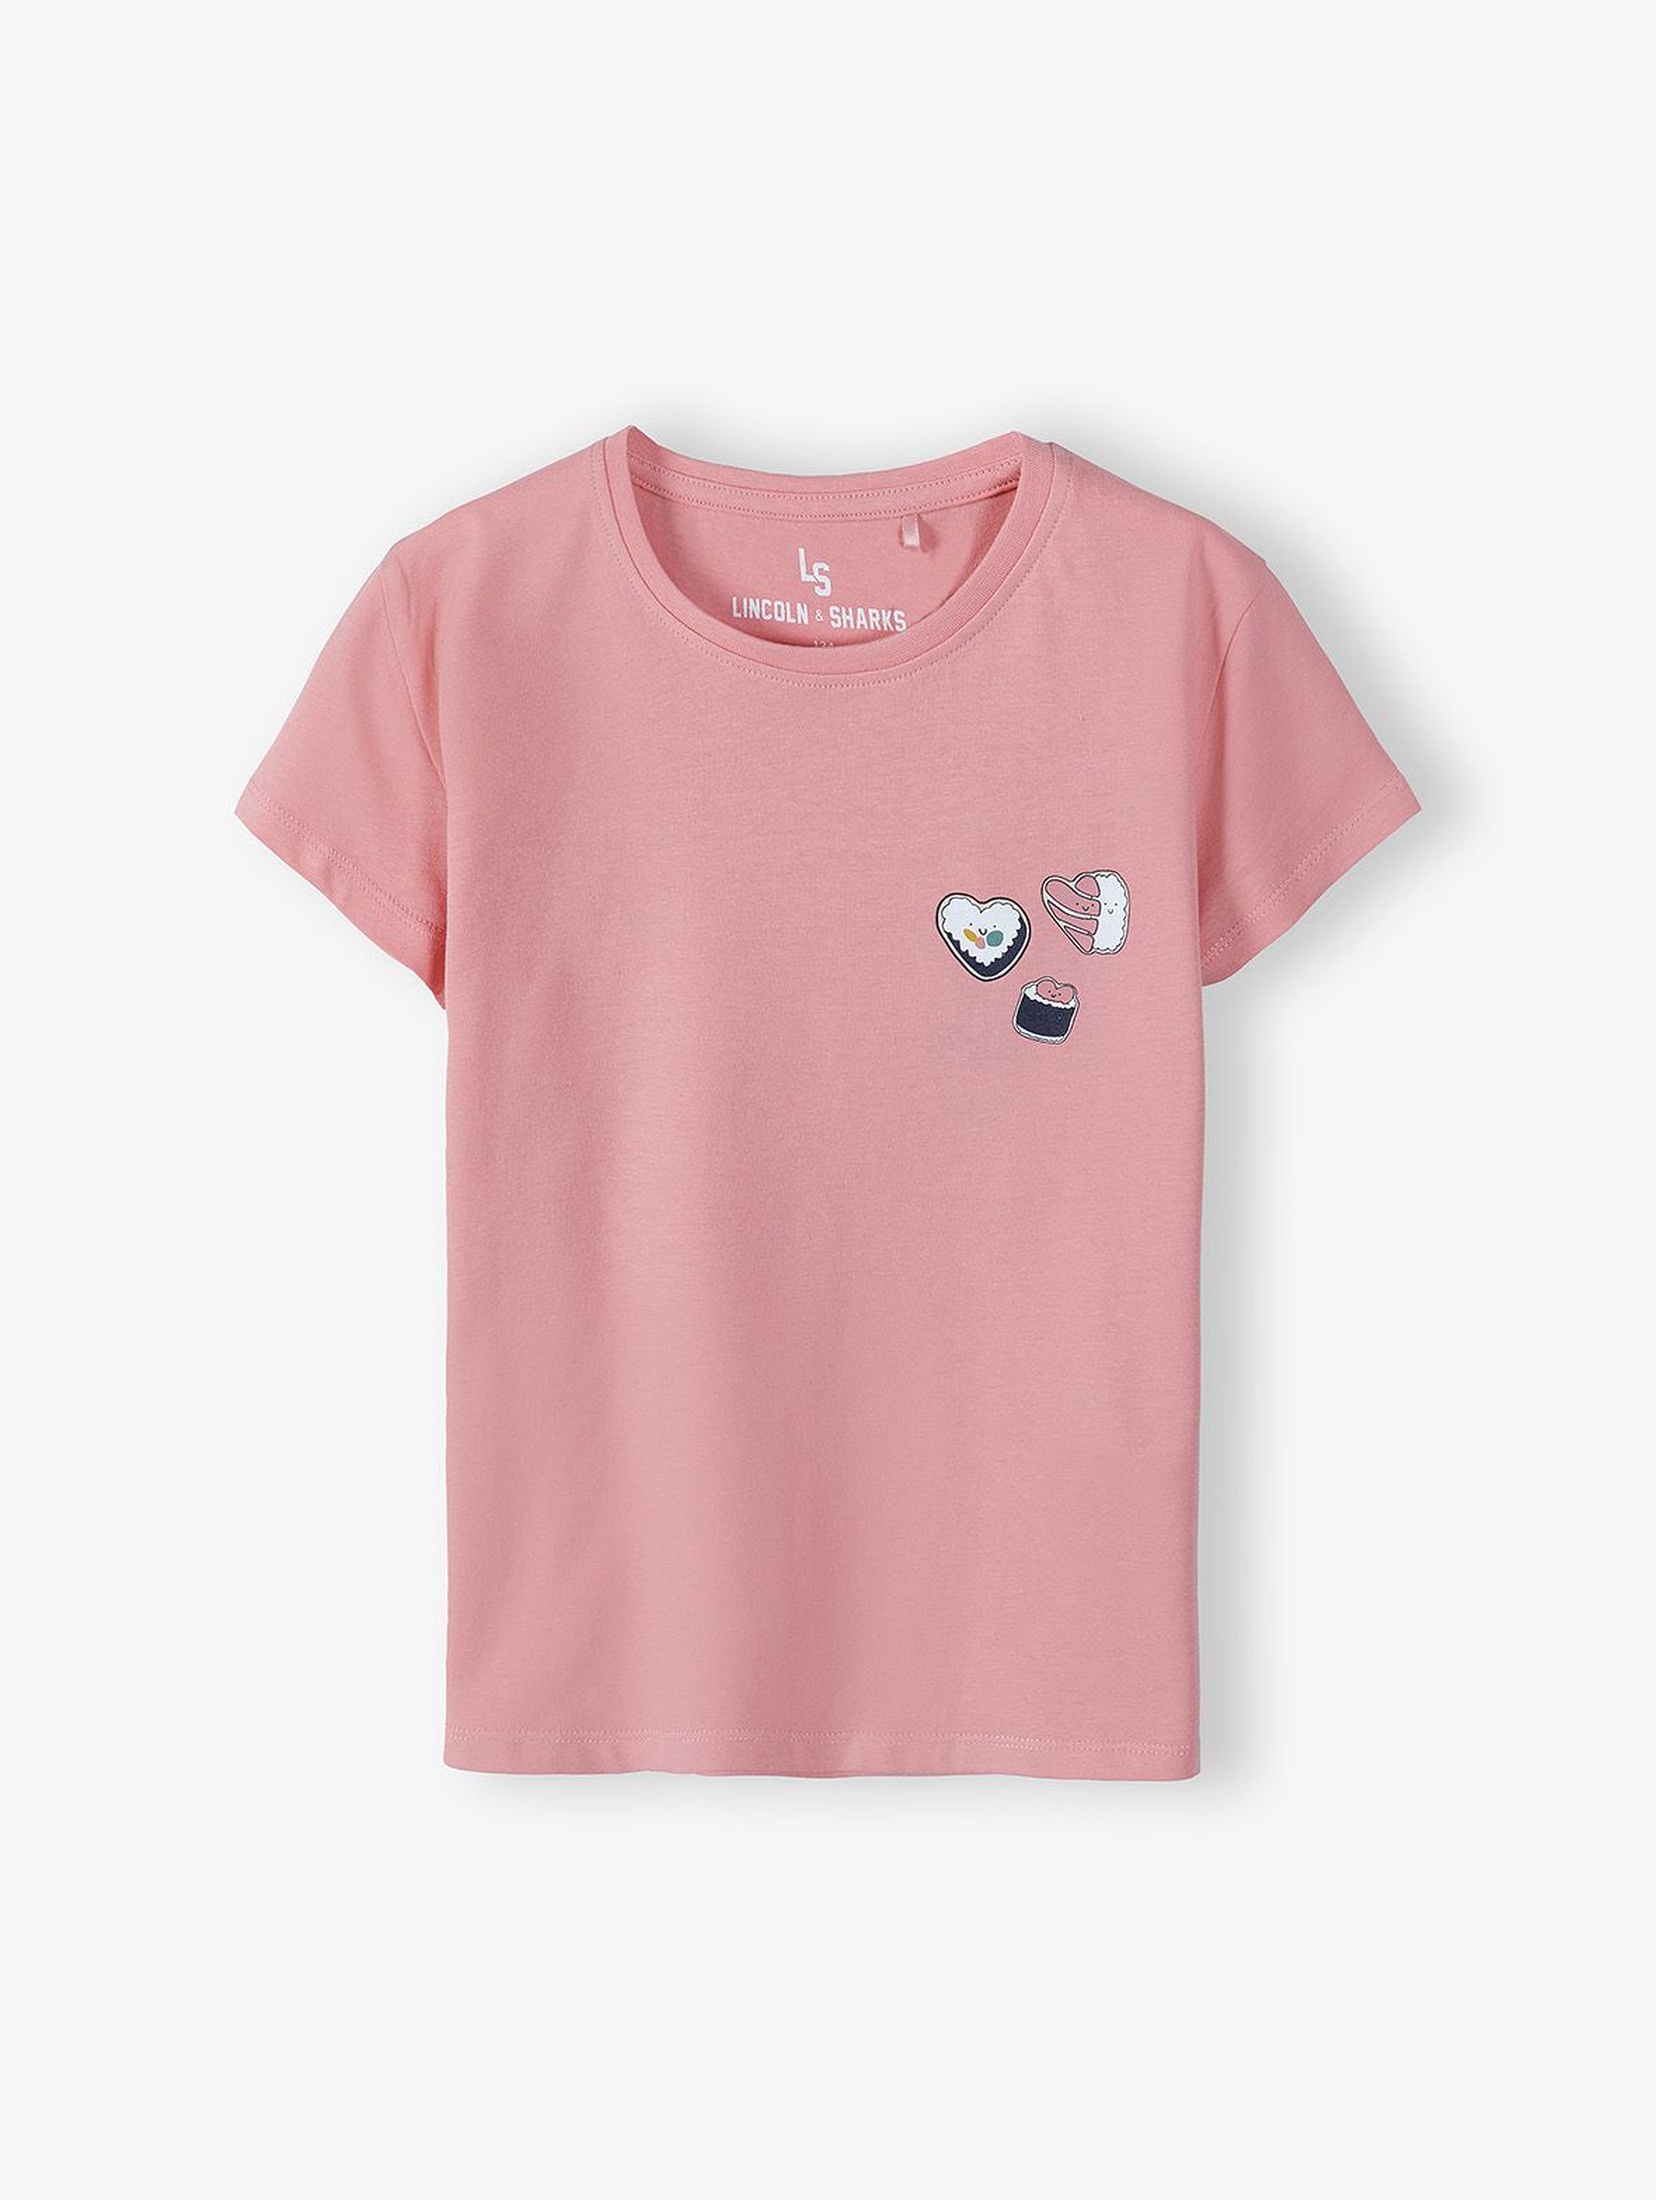 Bawełniany różowy t-shirt dziewczęcy z ozdobną aplikacją